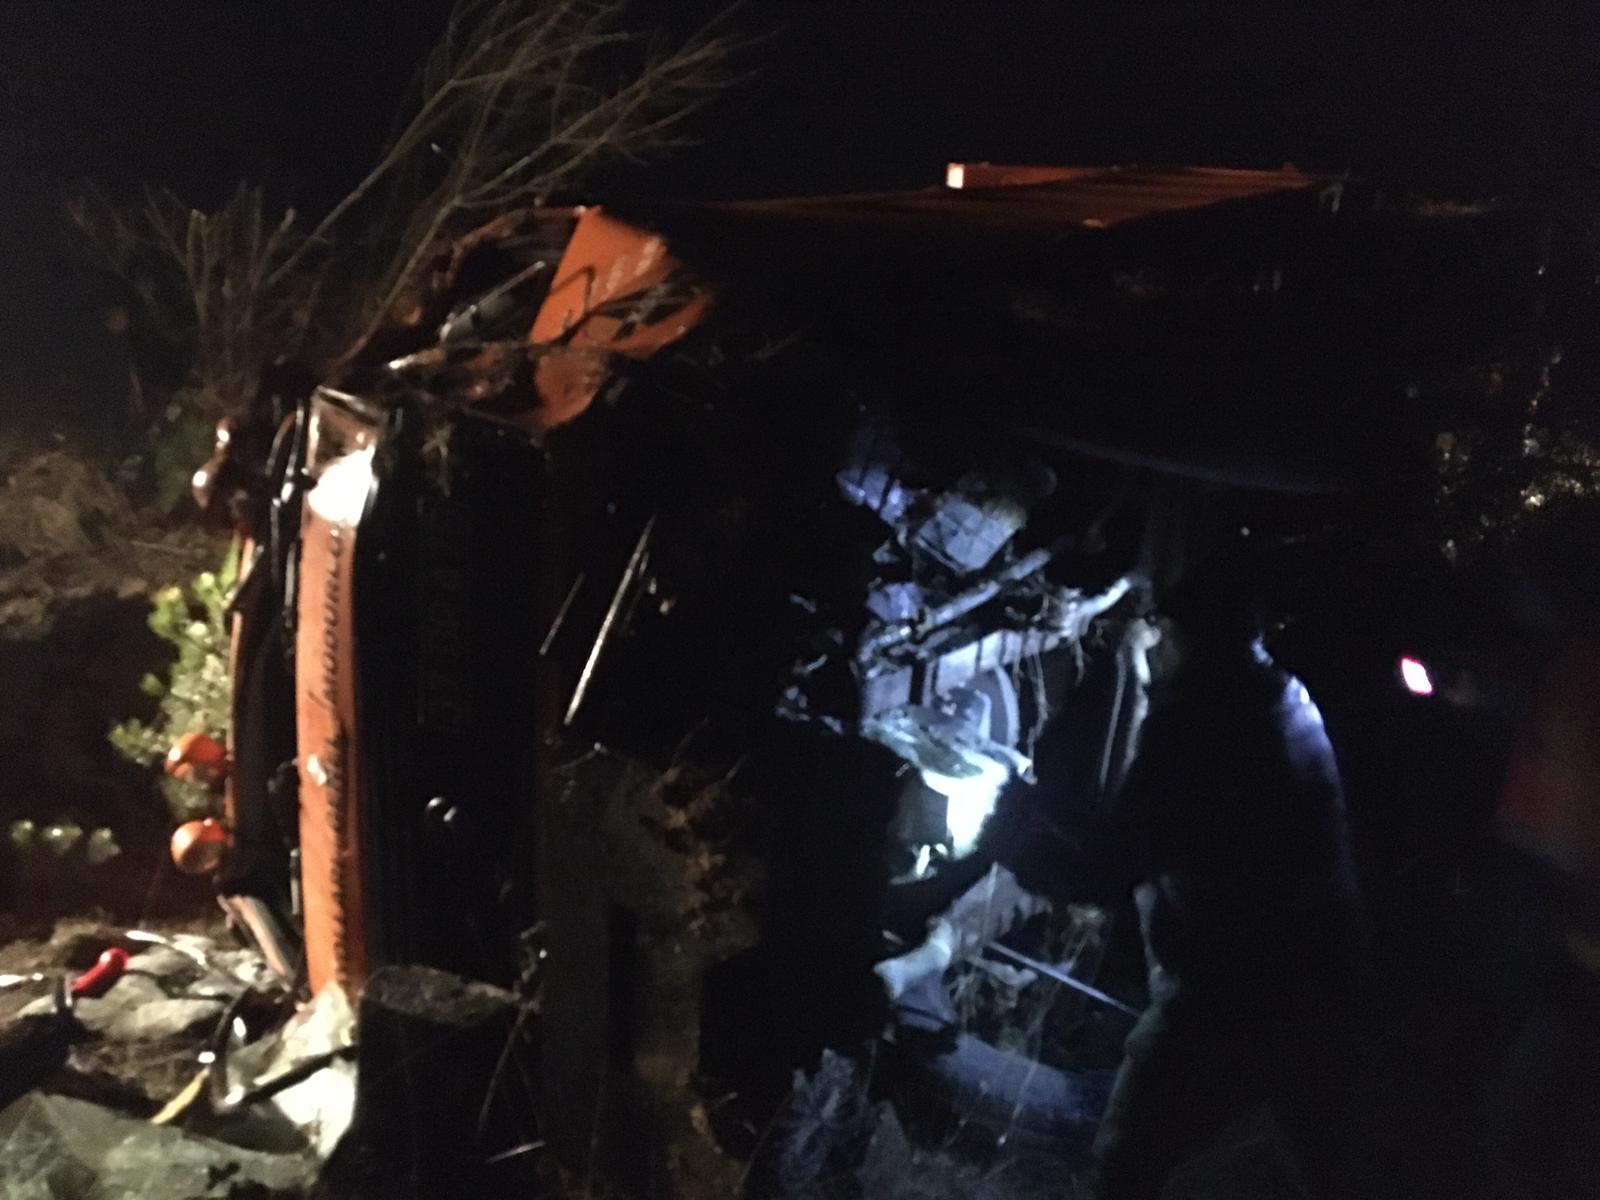 Kastamonu’da şarampole devrilen kamyonun sürücüsü yaralandı